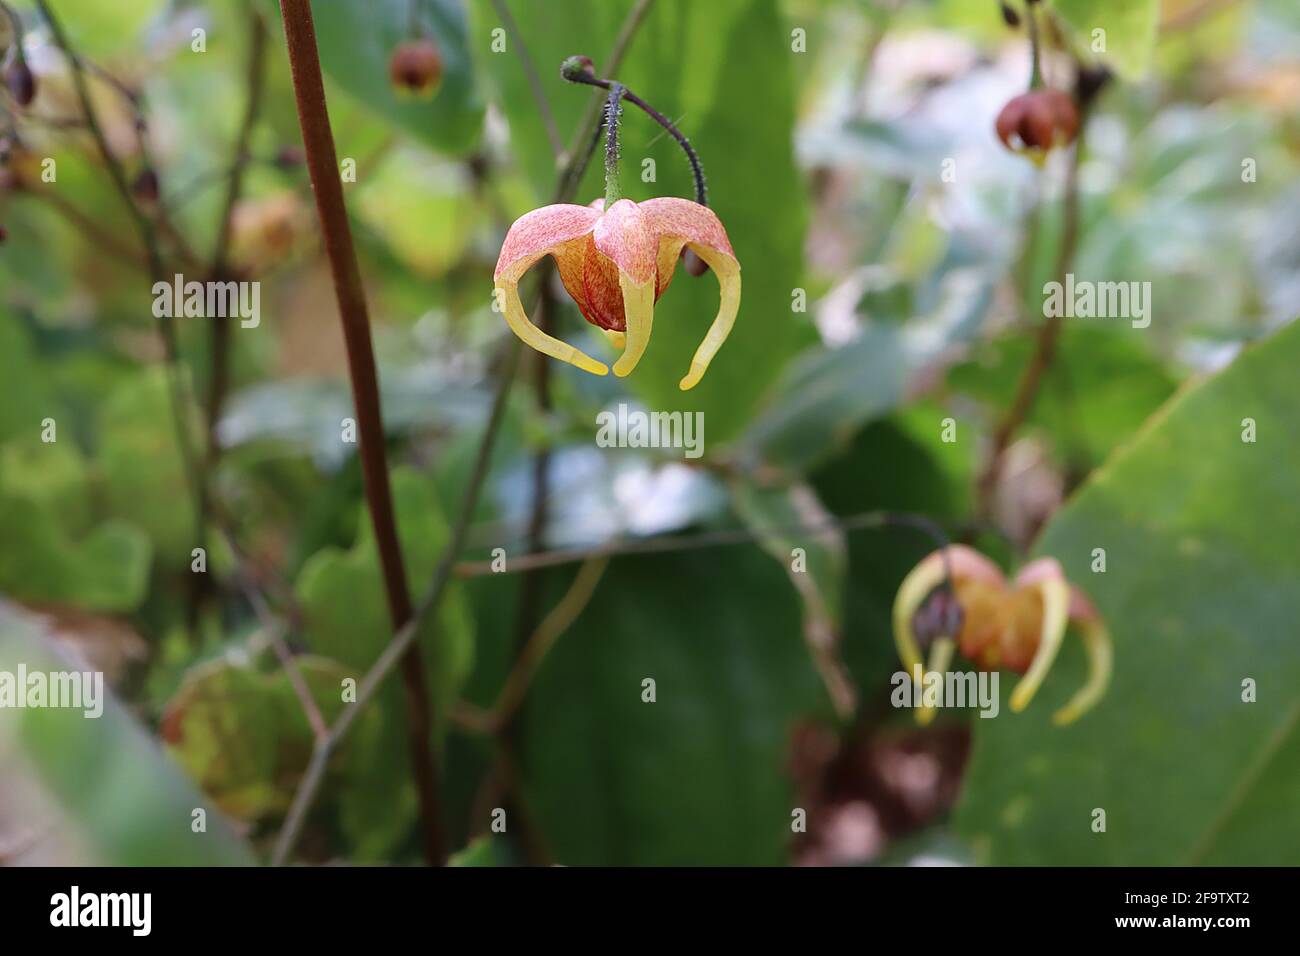 Epimedium wushanense x flavum gelbliches Barrenwort – gesprenkelte rote hängende Blüten mit hängenden gelben Spornen, April, England, Großbritannien Stockfoto